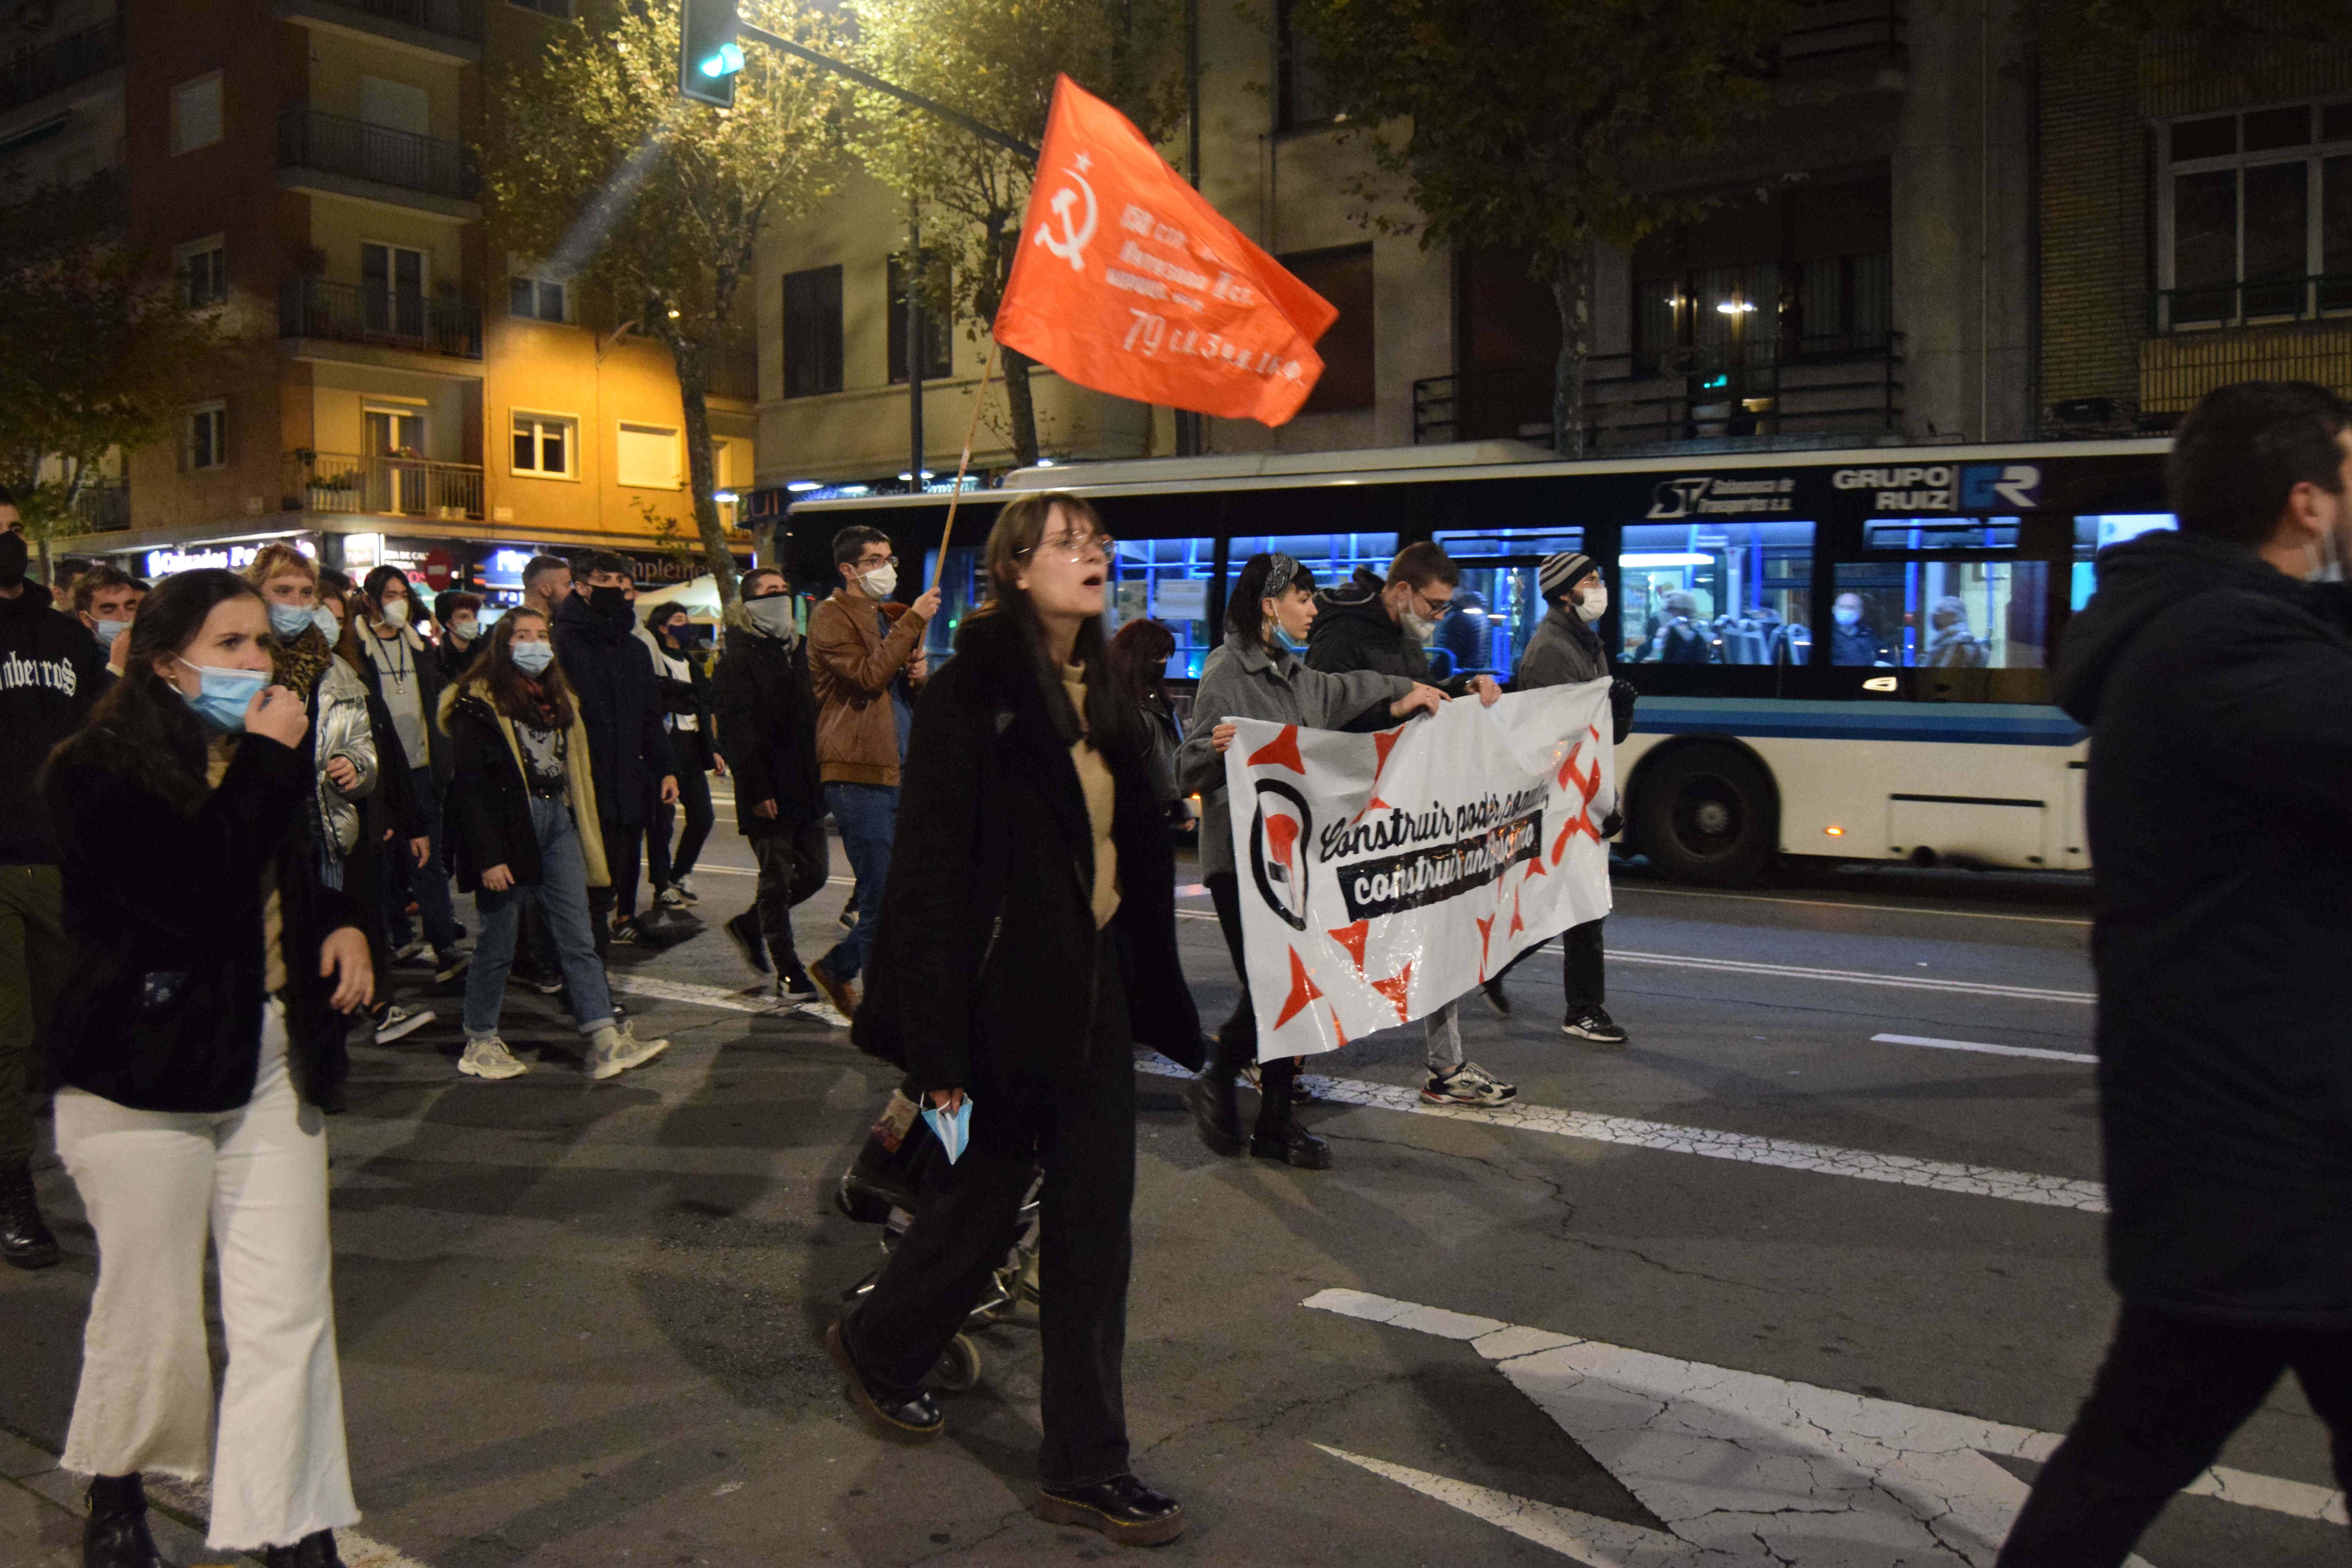 Manifestación del movimiento antifascista